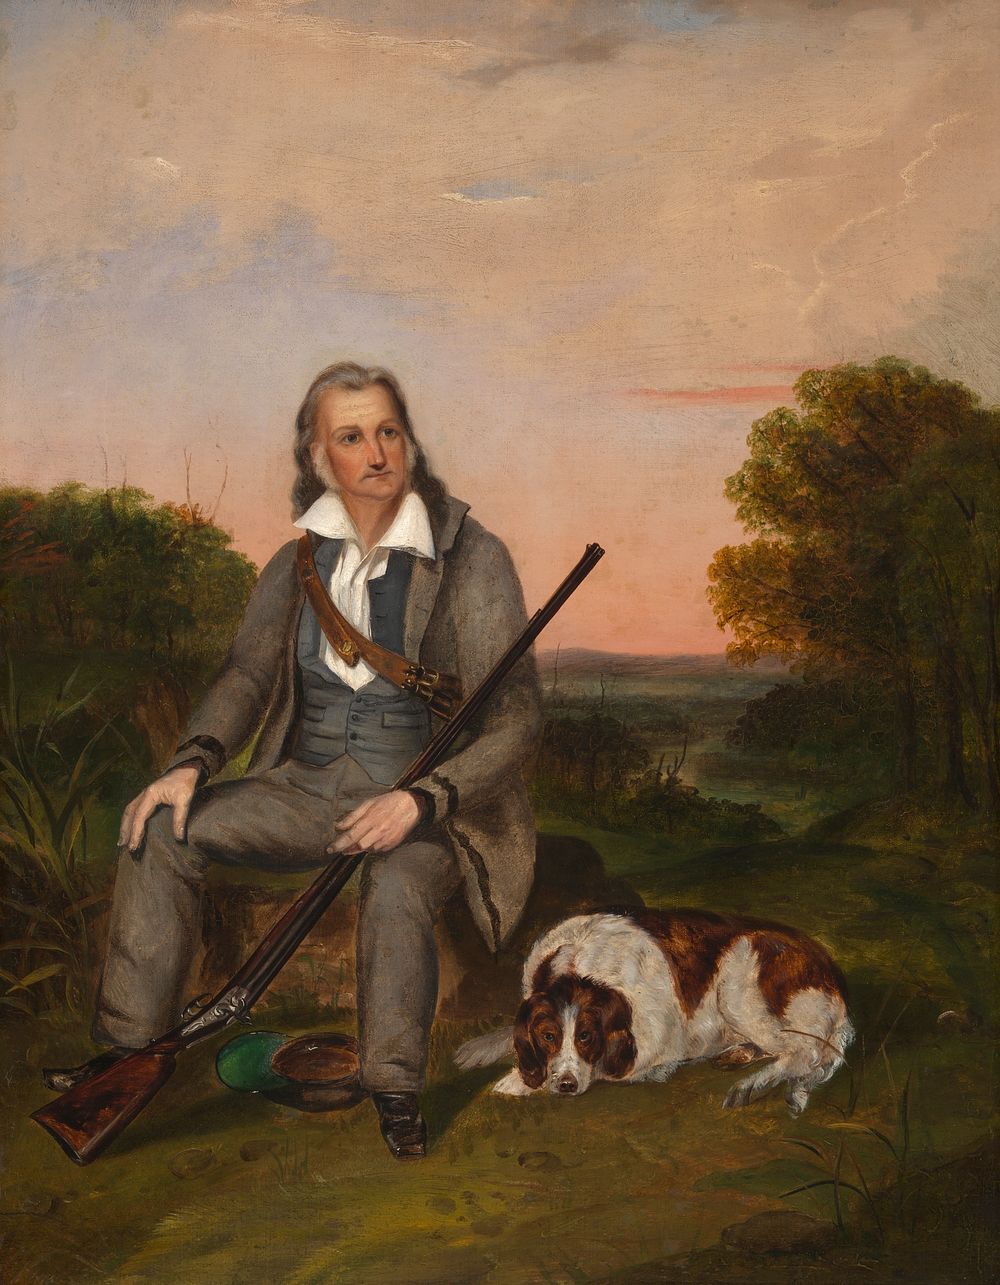 John James Audubon, unidentified artist